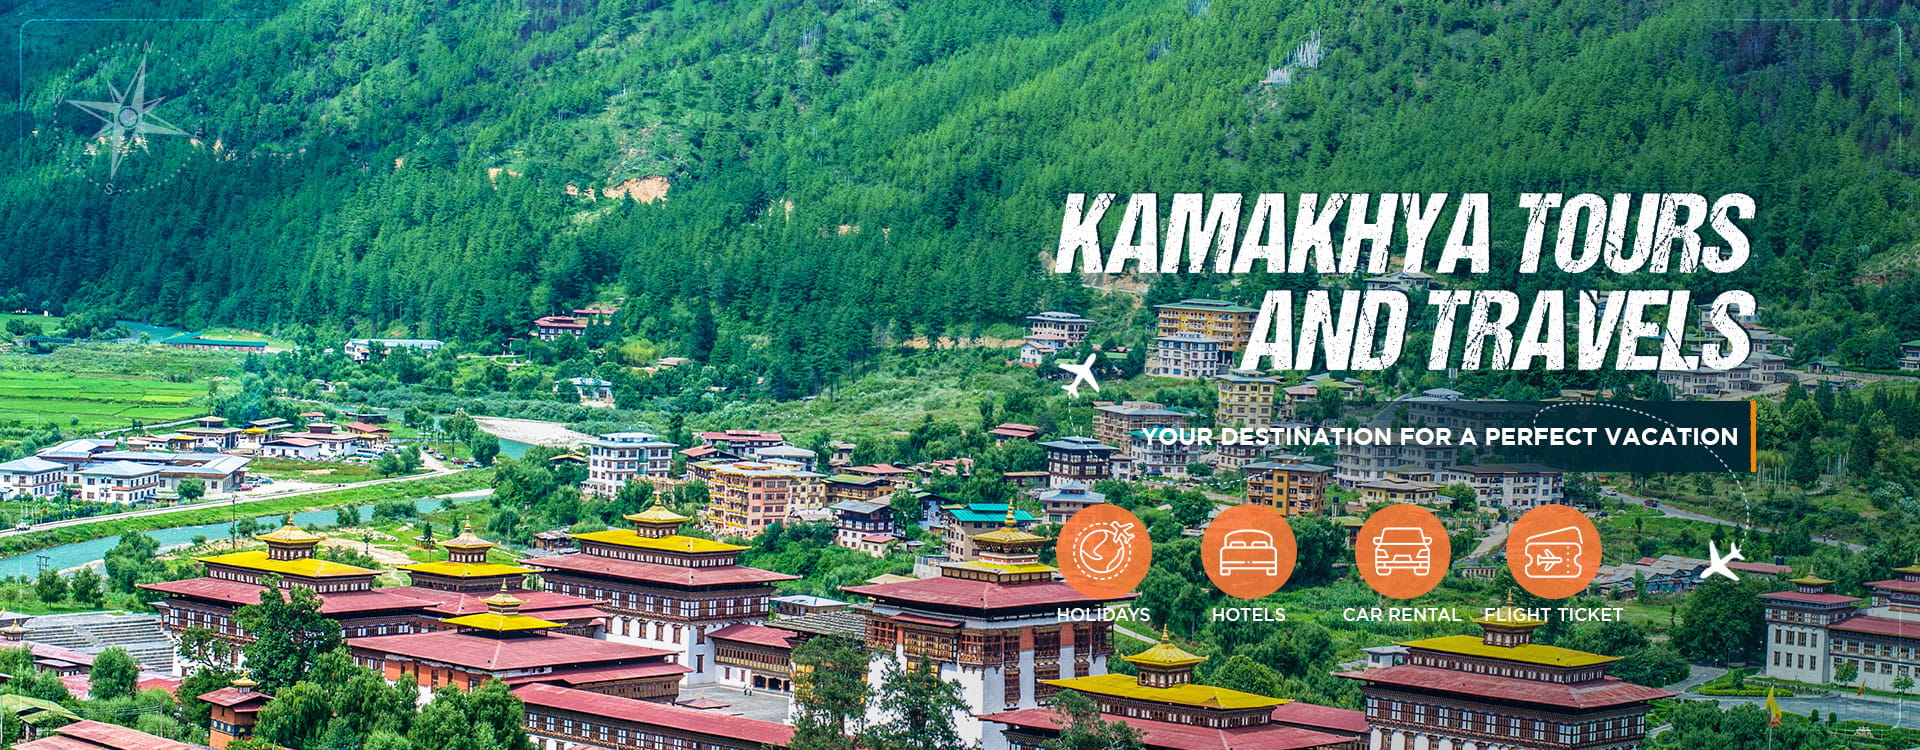 Kamakhya Bhutan